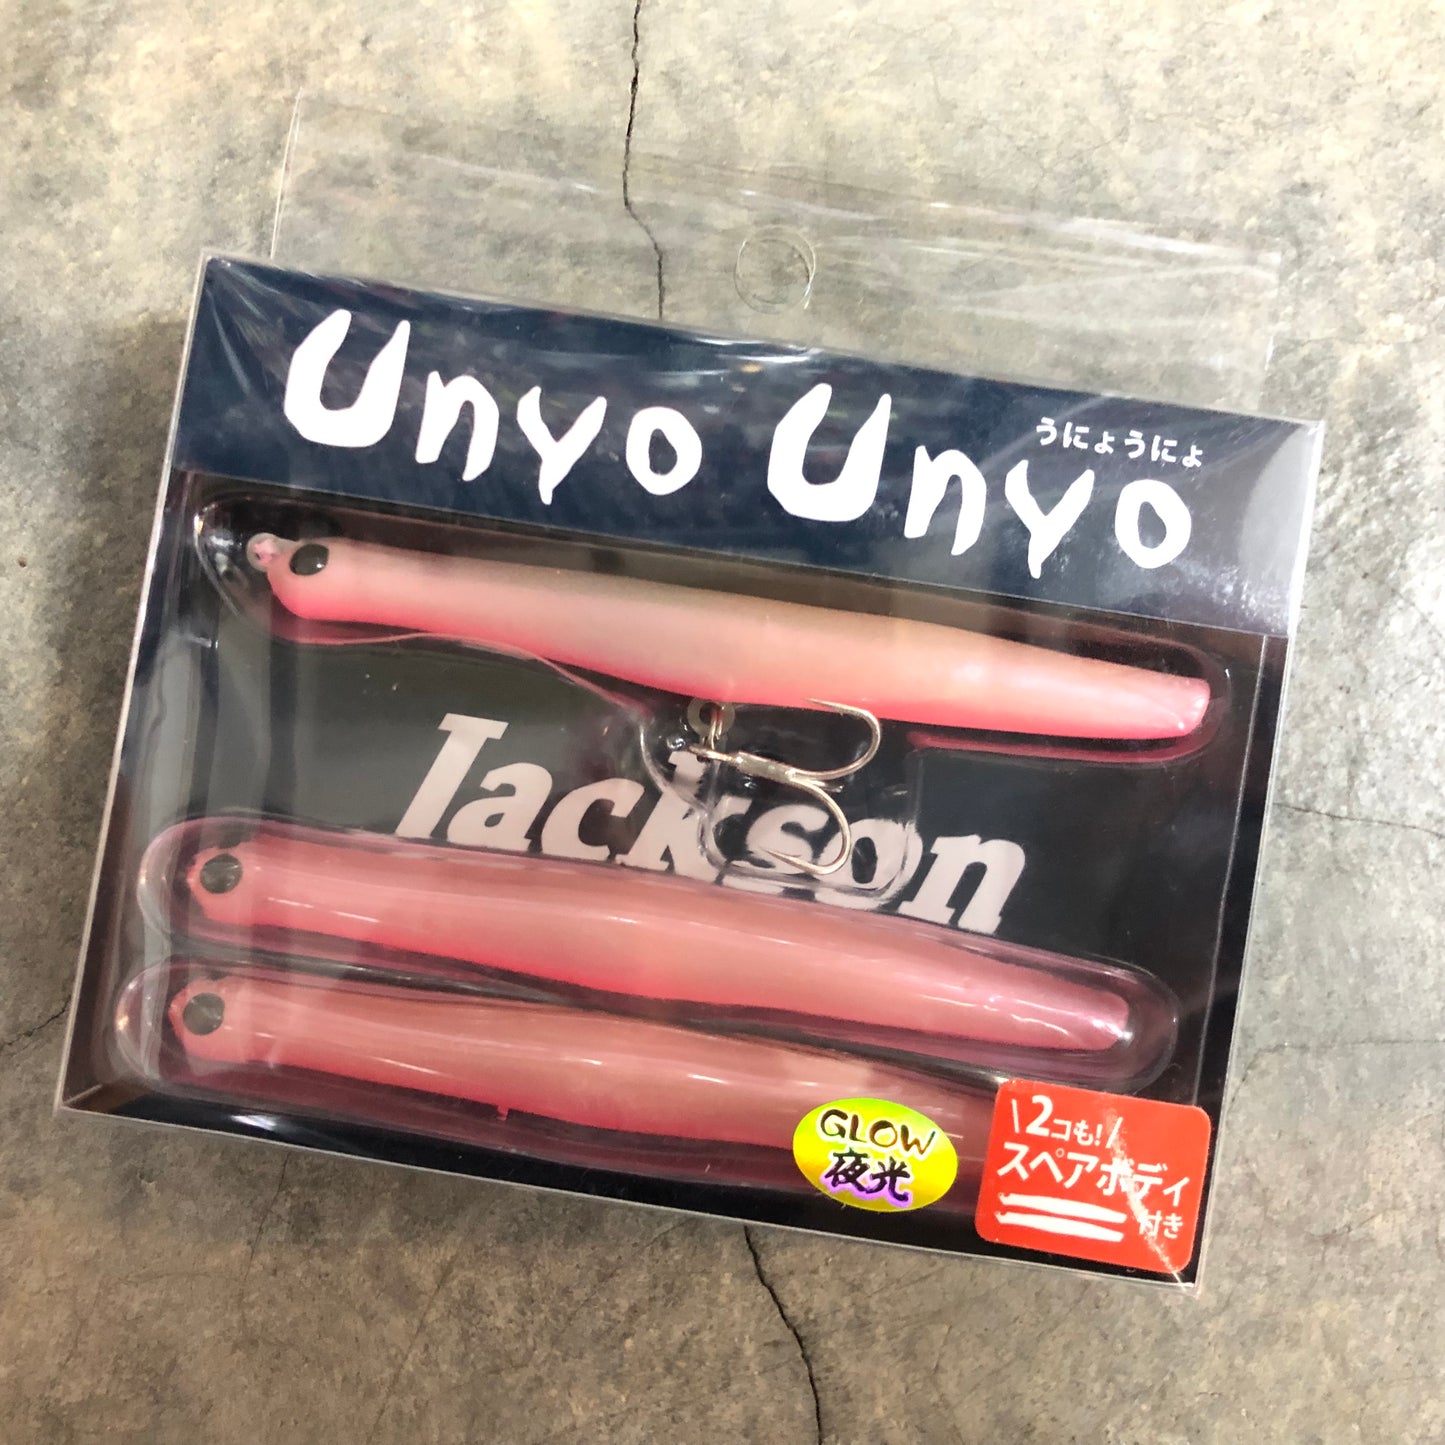 Unyo Unyo 90